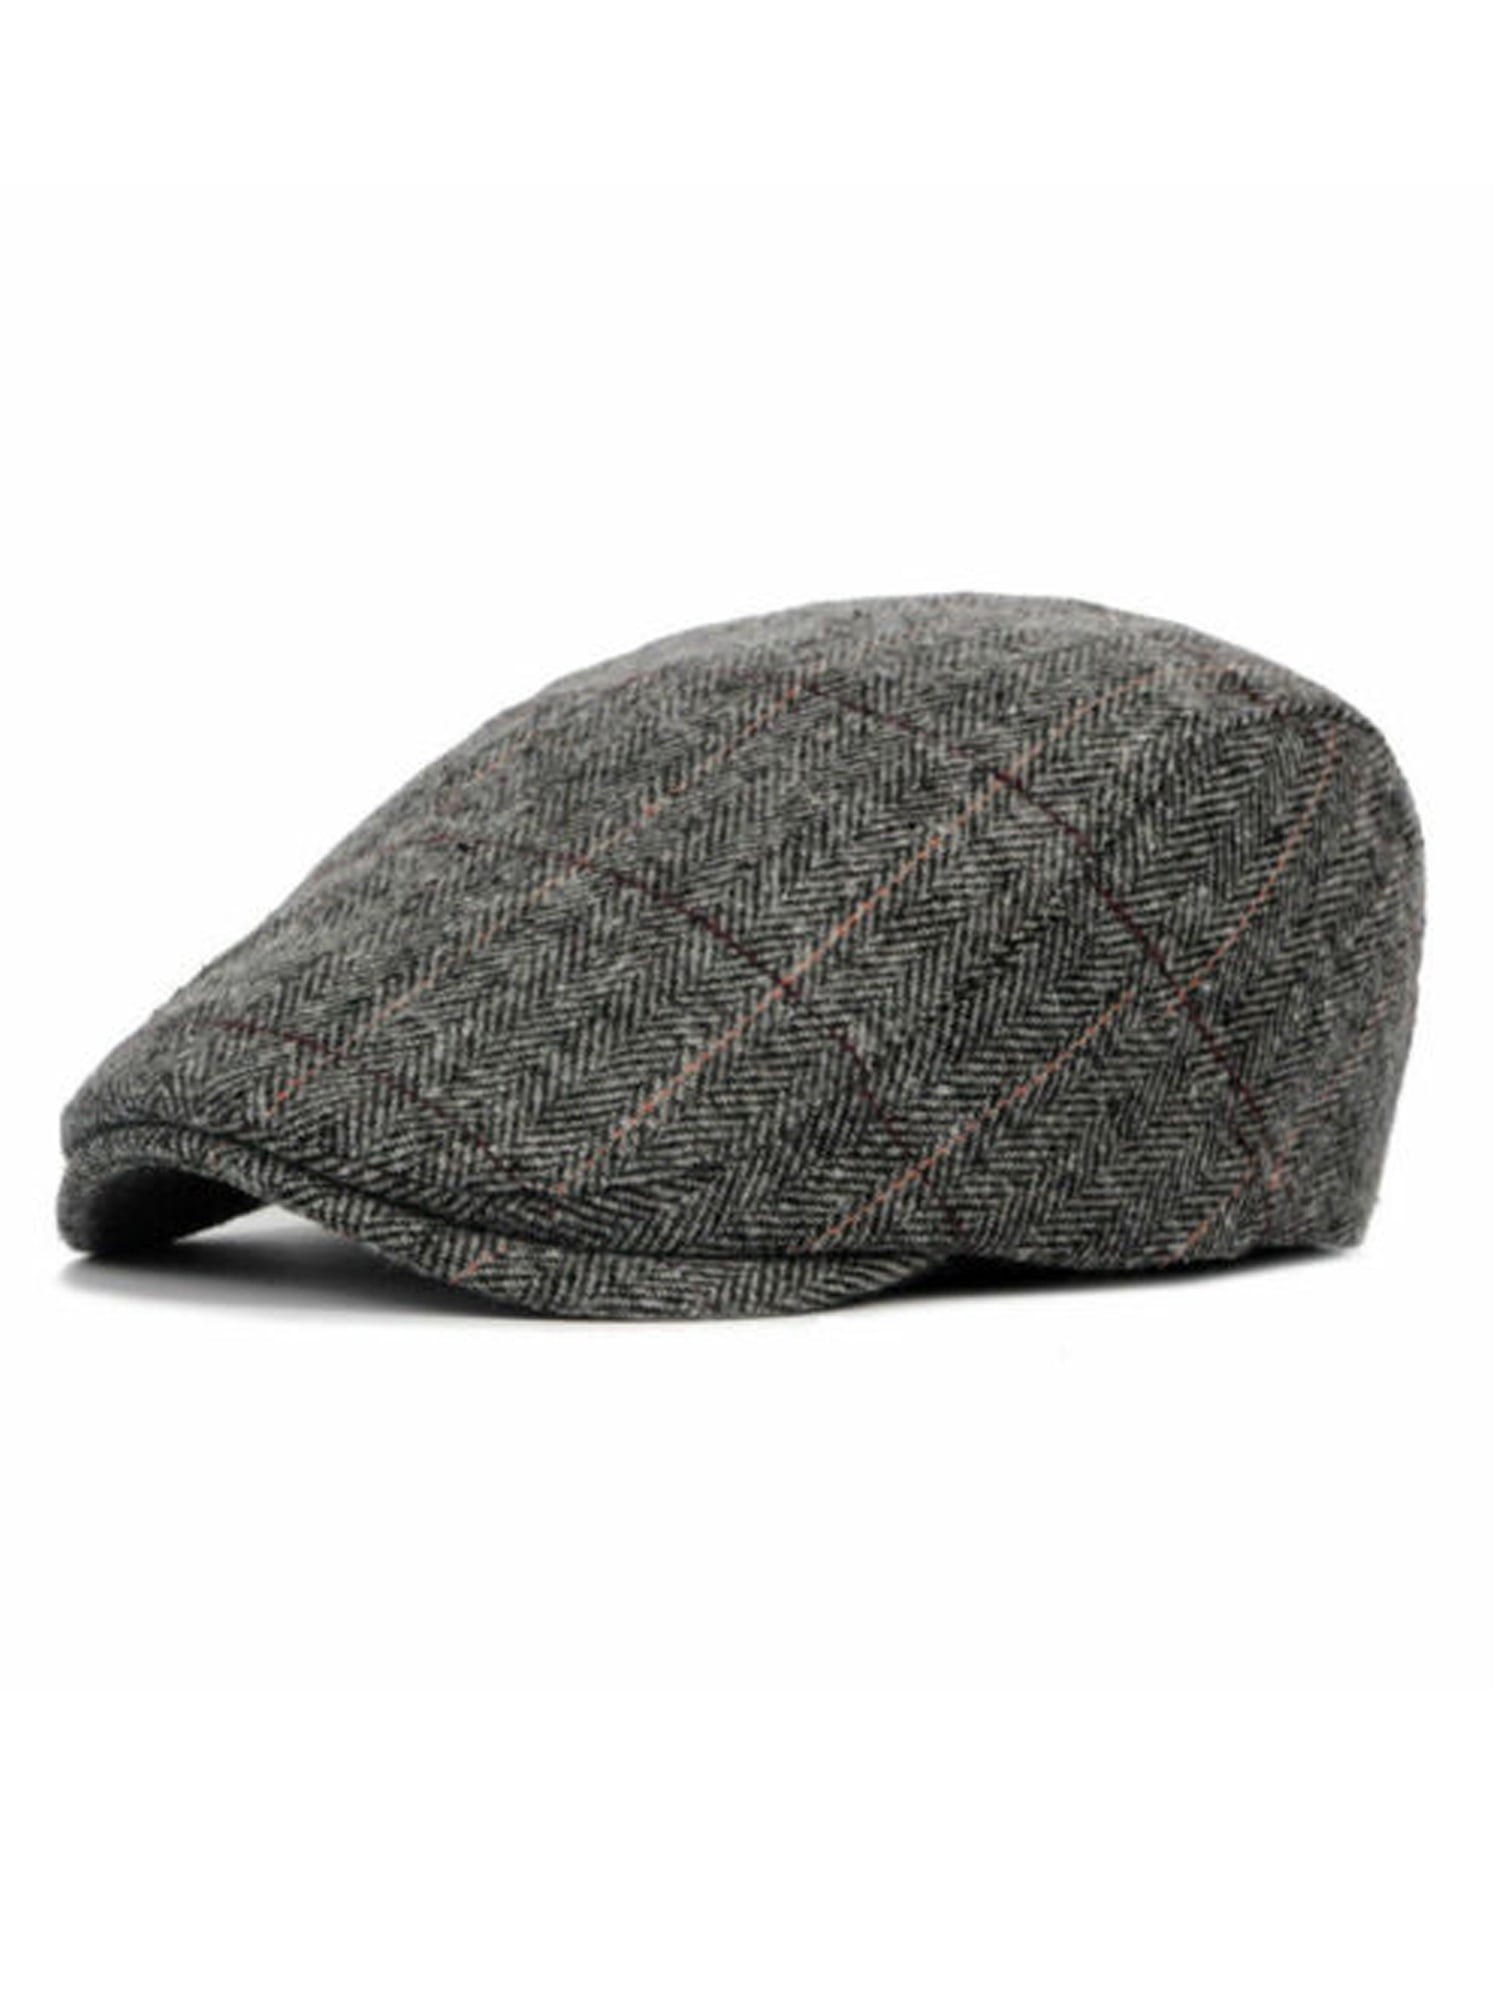 Donegal Brown Tweed Newsboy Peaky Blinders Flat Cap Bakerboy Wool Gatsby Hat 